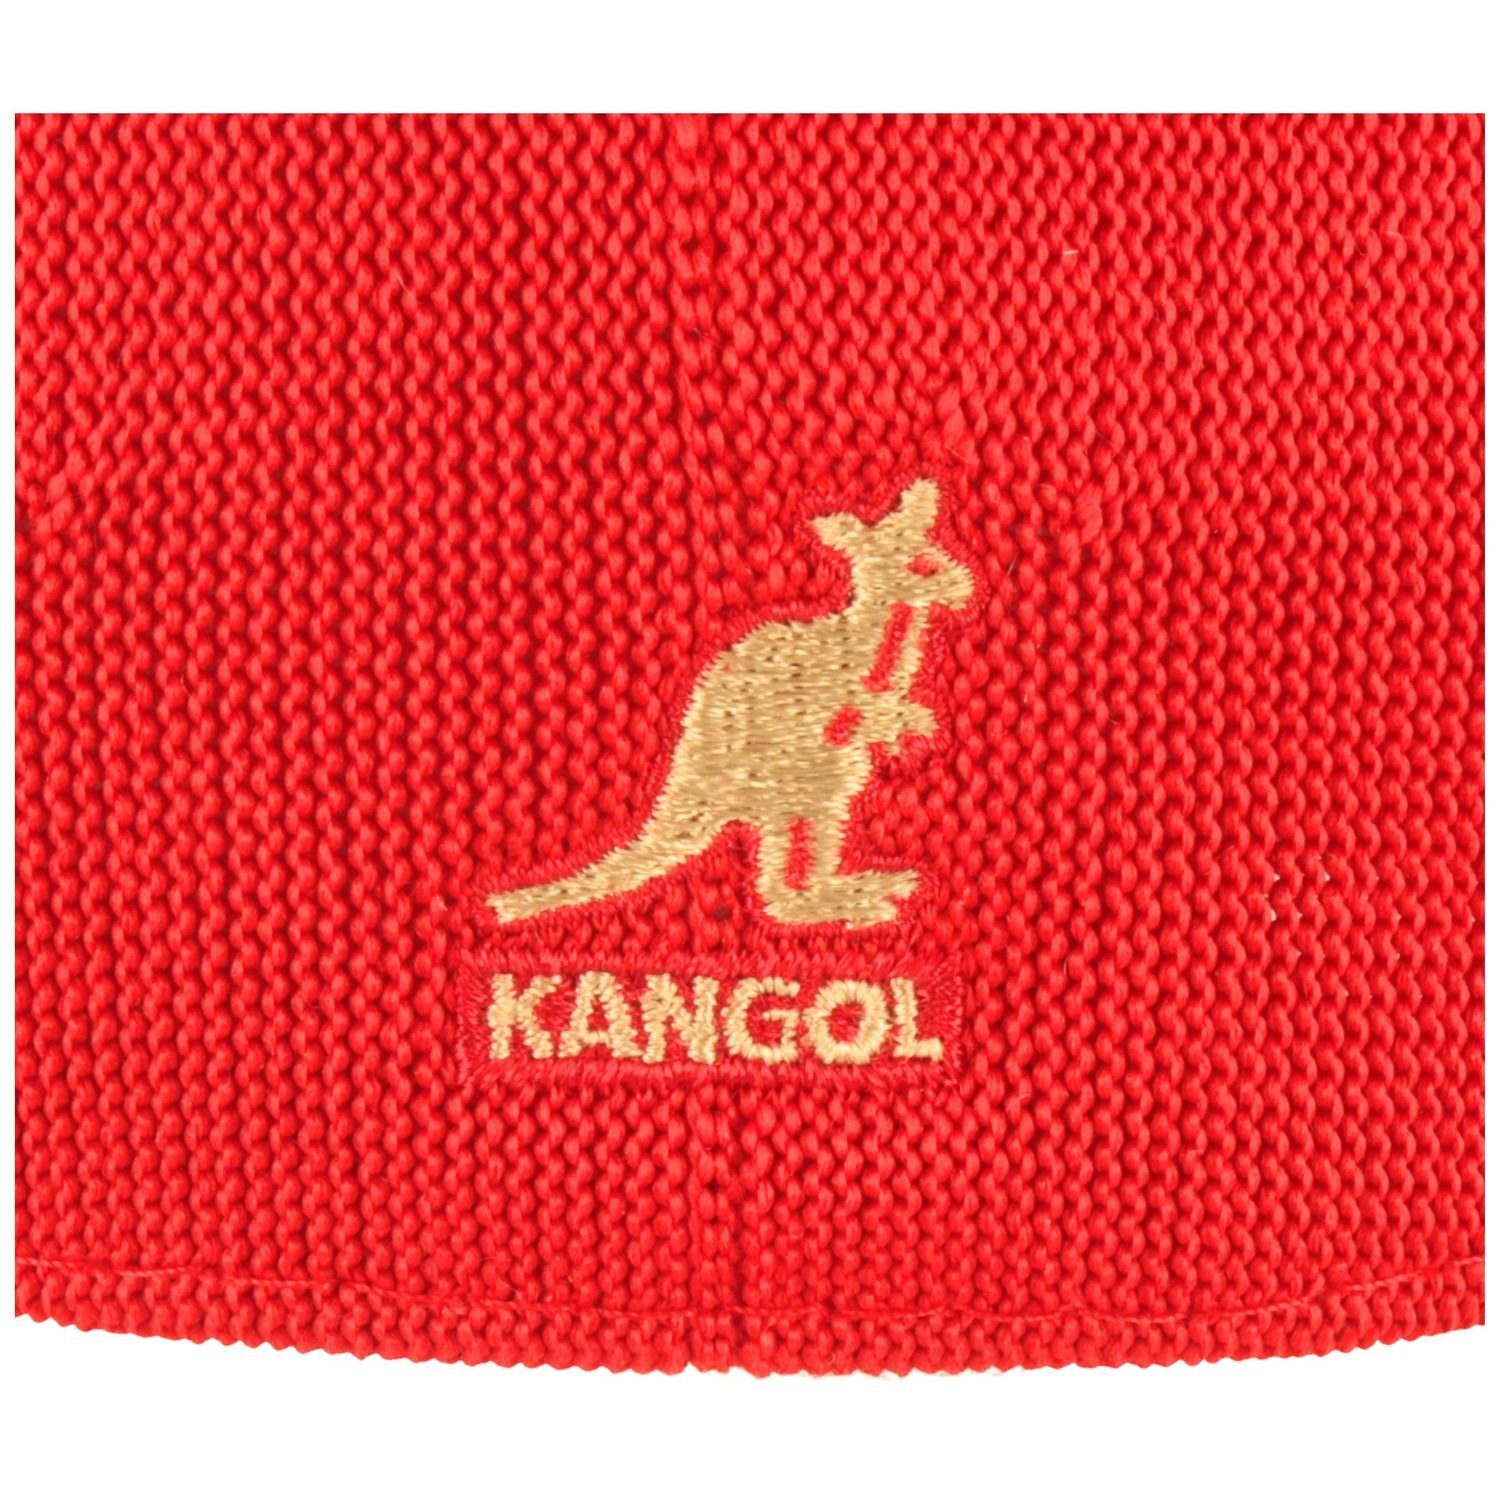 luftig Tropic Ventair leicht, Flatcap Kangol SC613-rot Schiebermütze 507